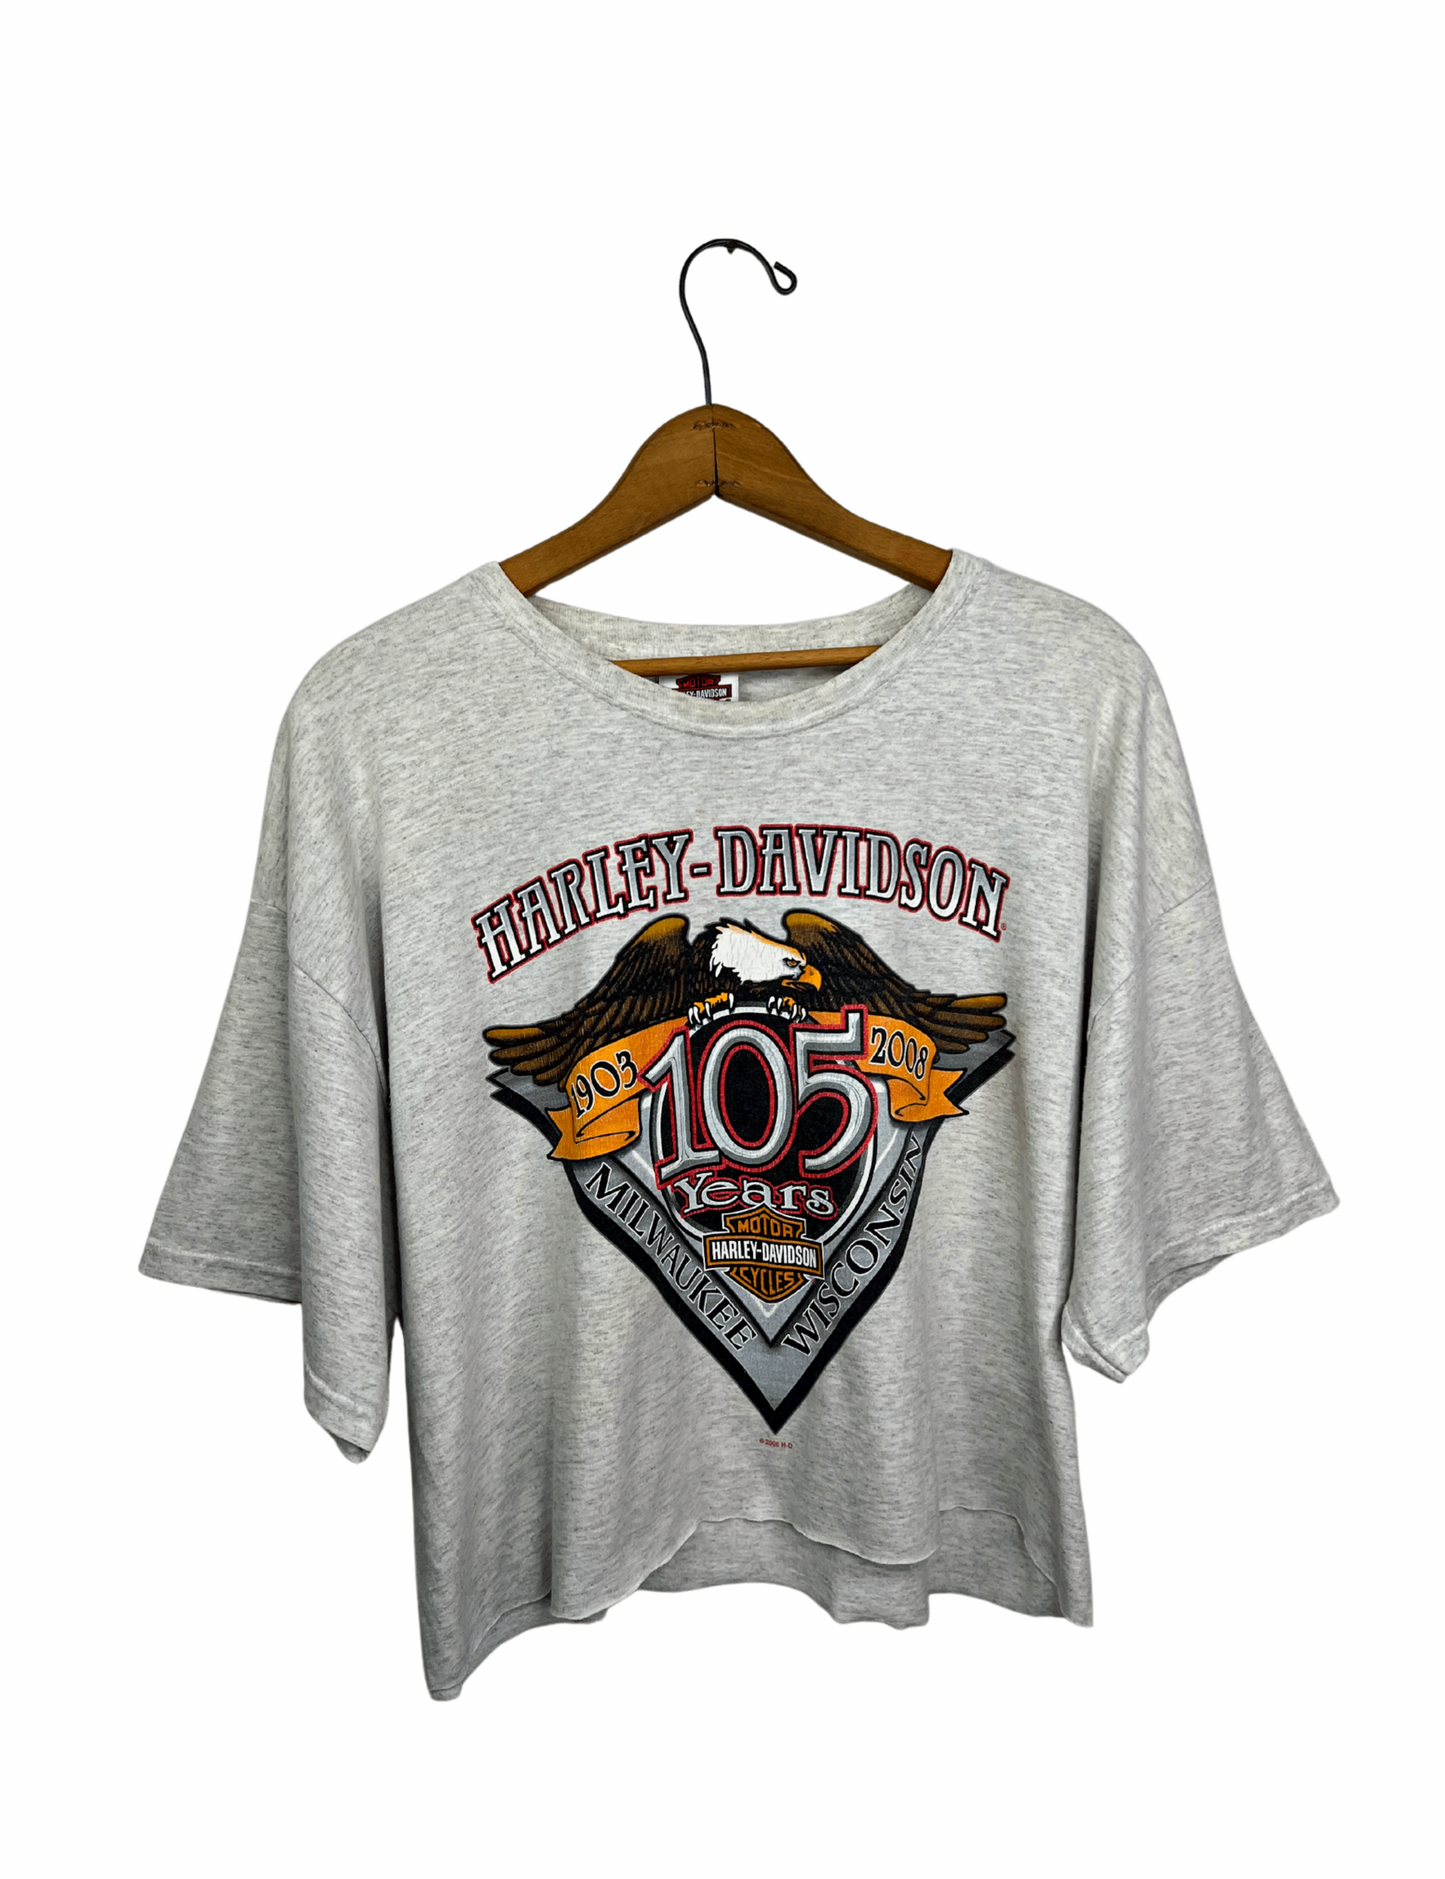 2008 Harley Davidson 105th Anniversary Racine Wisconsin Biker Crop Top